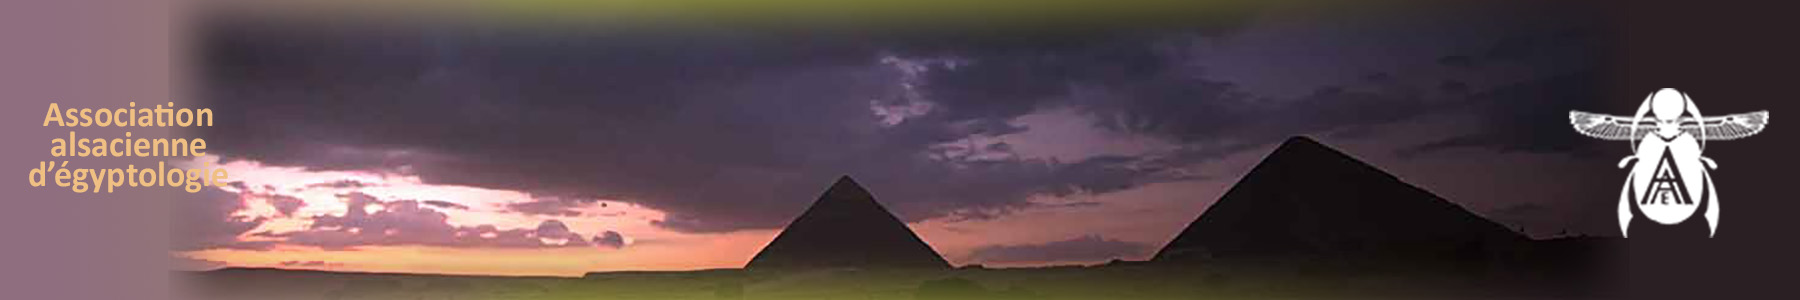 pyramidesW.jpg